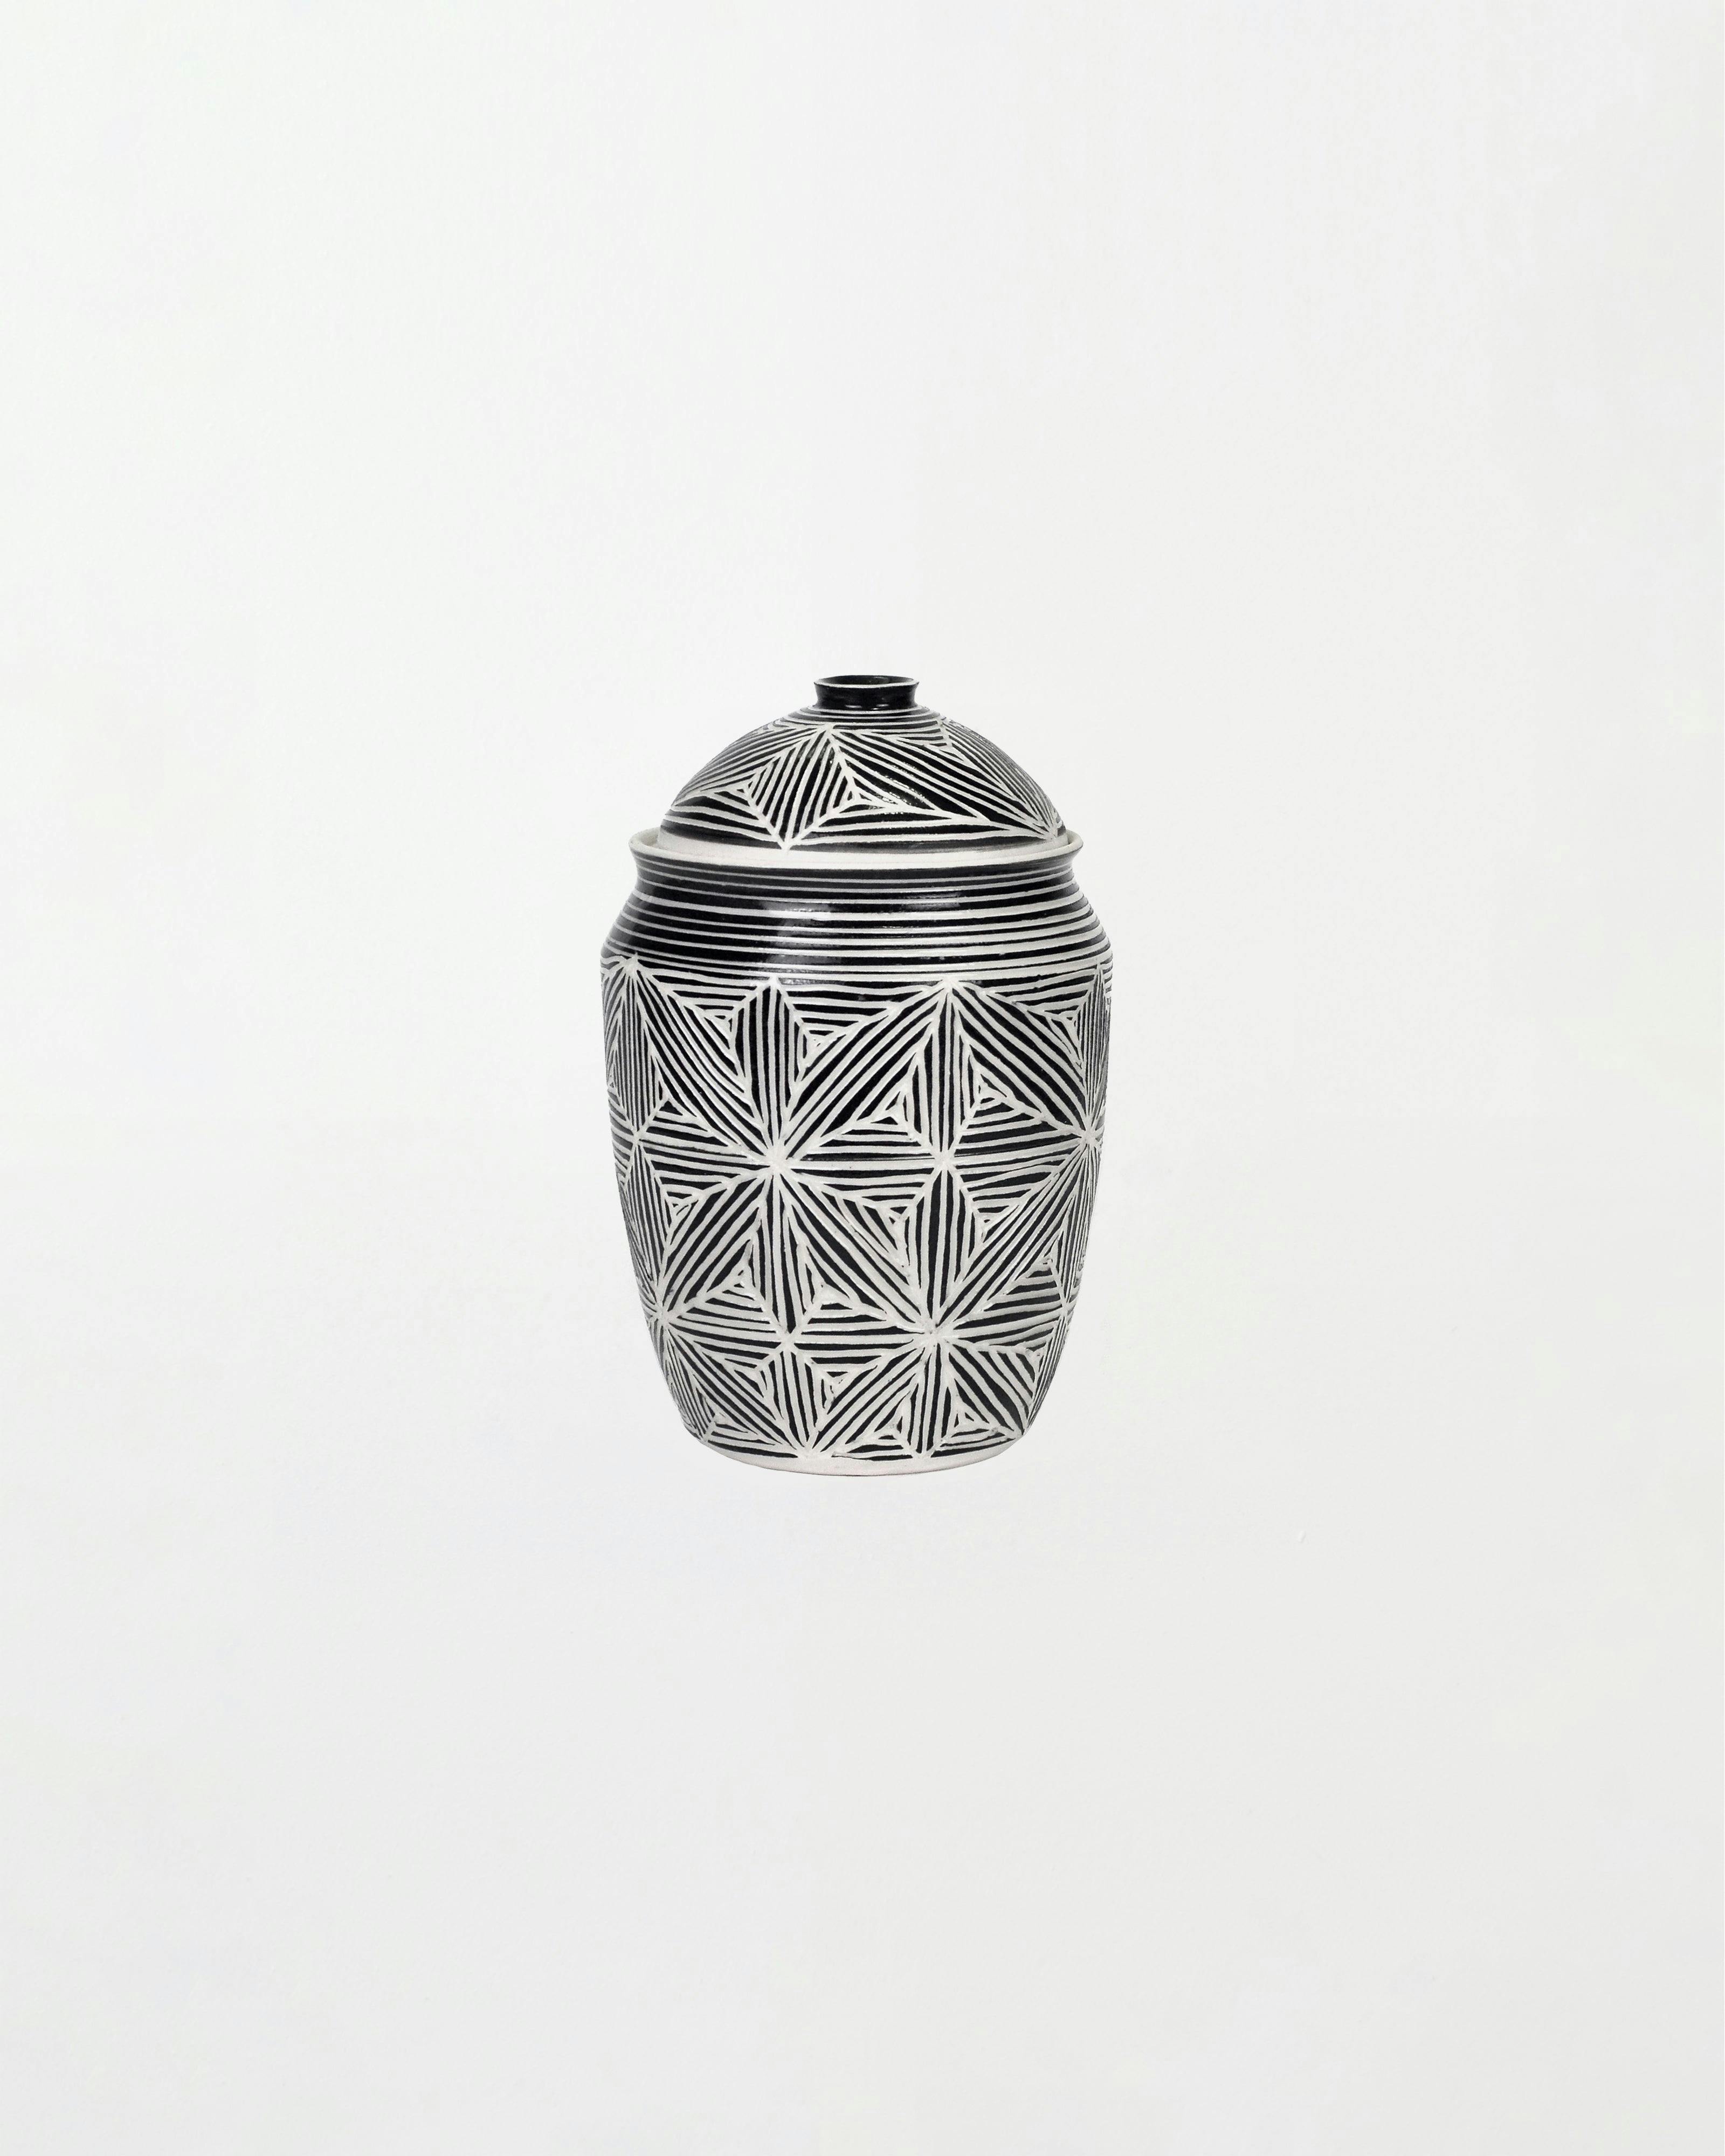 Sculpture by Dana Bechert titled "Lidded Jar".